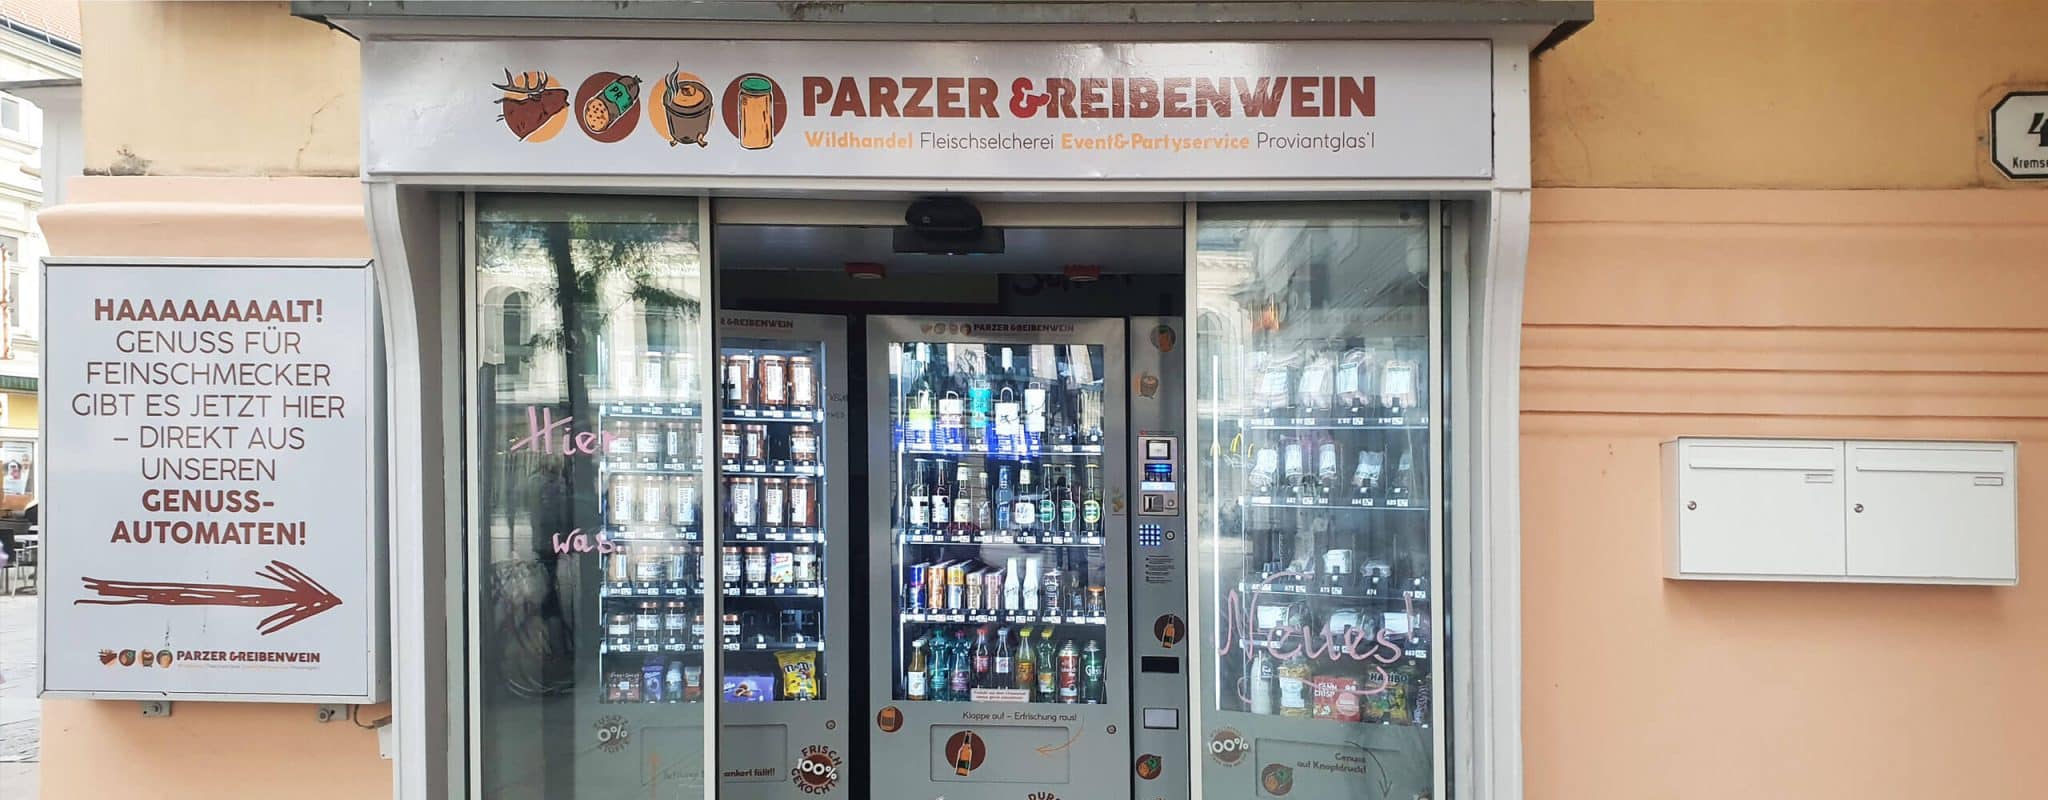 Parzer & Reibenwein | Genuss-Automaten